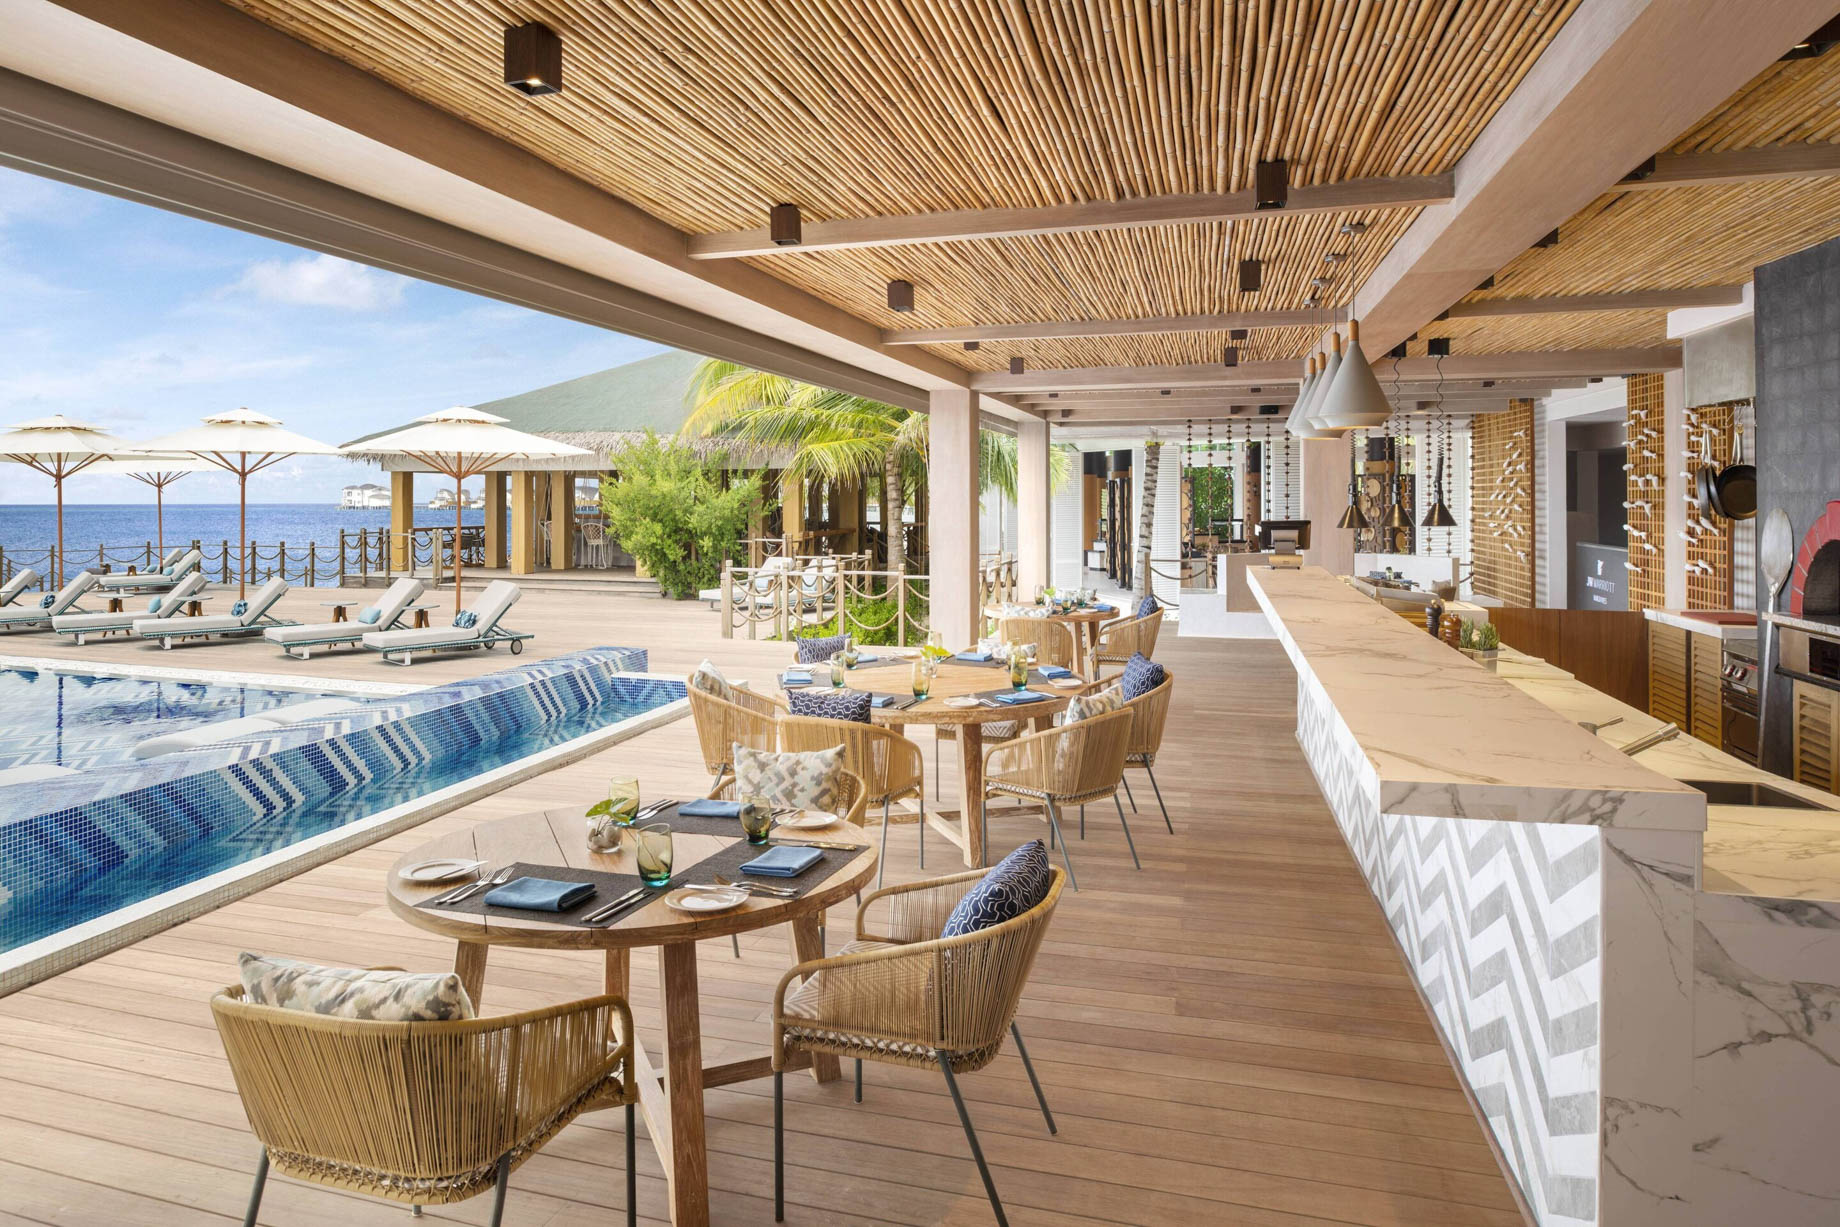 JW Marriott Maldives Resort & Spa – Shaviyani Atoll, Maldives – Fiamma Italian & Wood Fired Pizzas